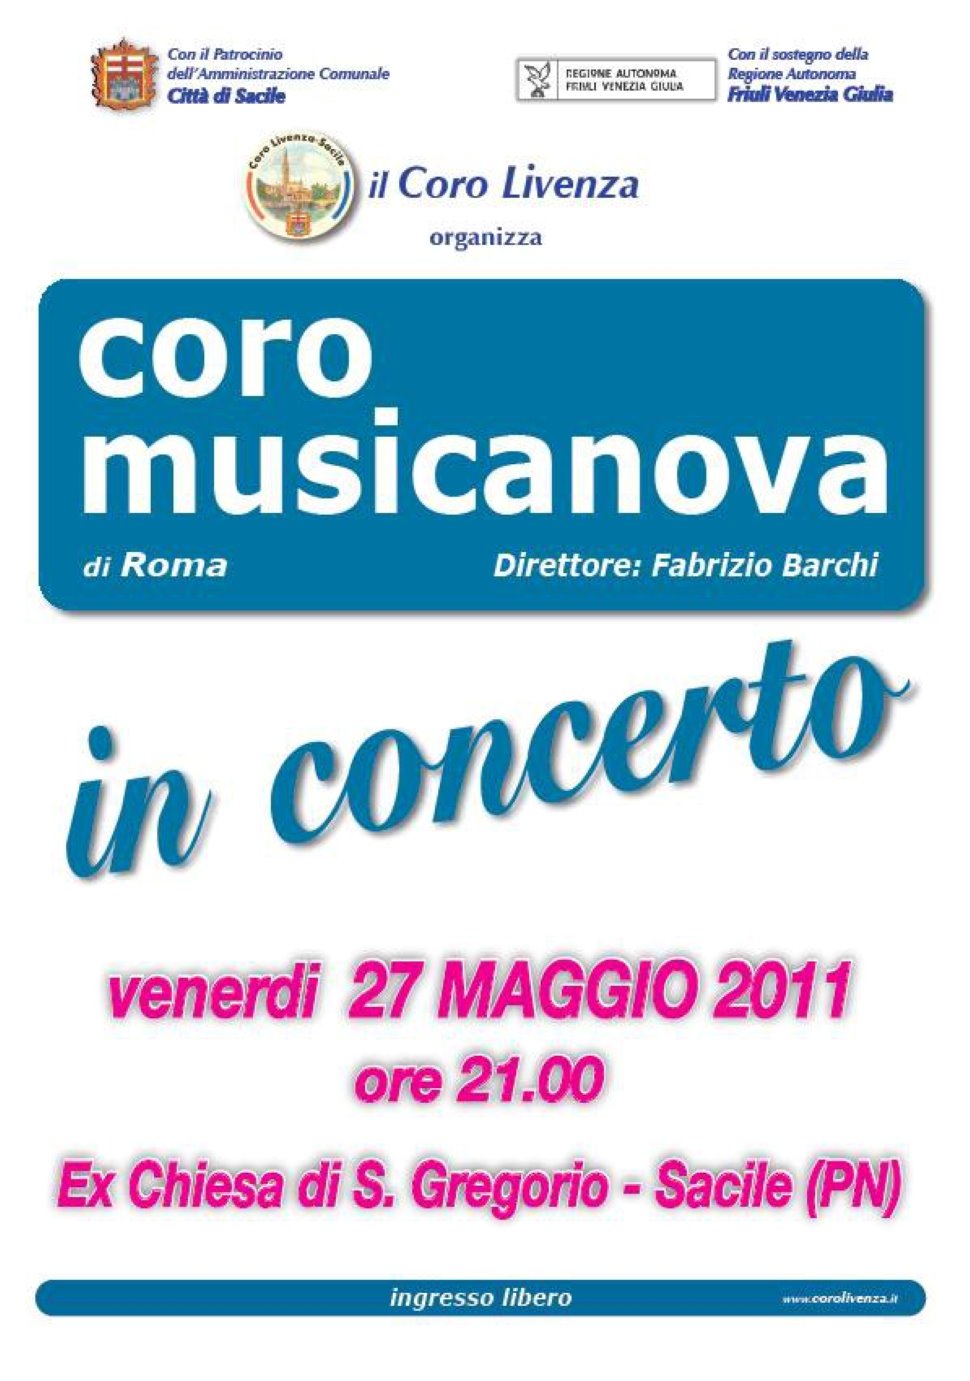 "Coro Musicanova in Concerto"